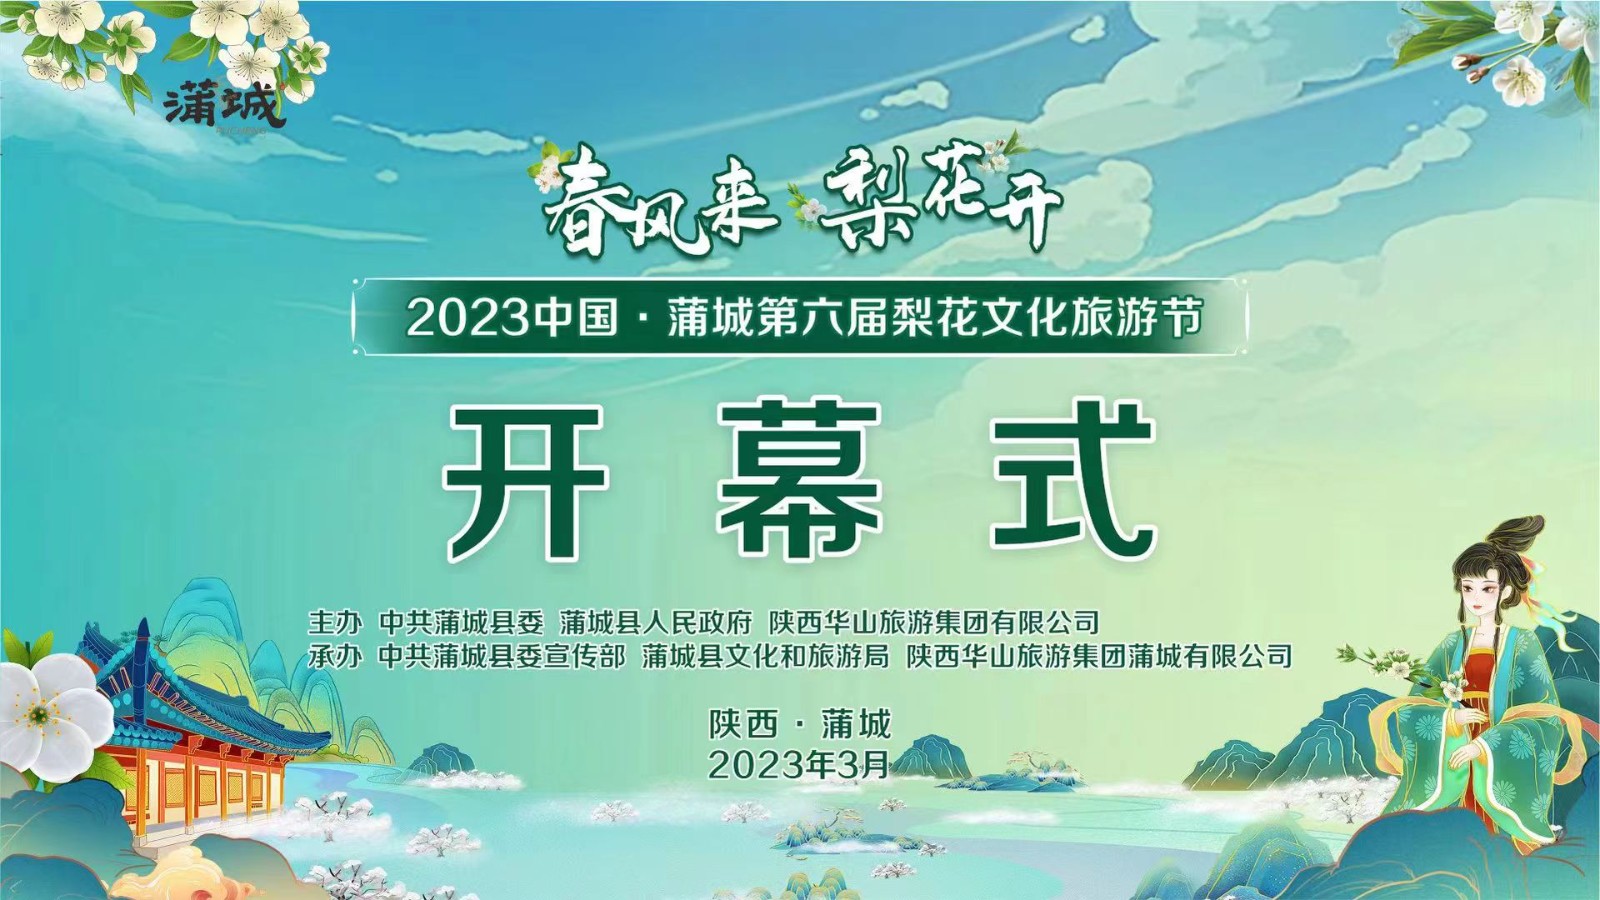 春风来 梨花开 2023中国·蒲城第六届梨花文化旅游节